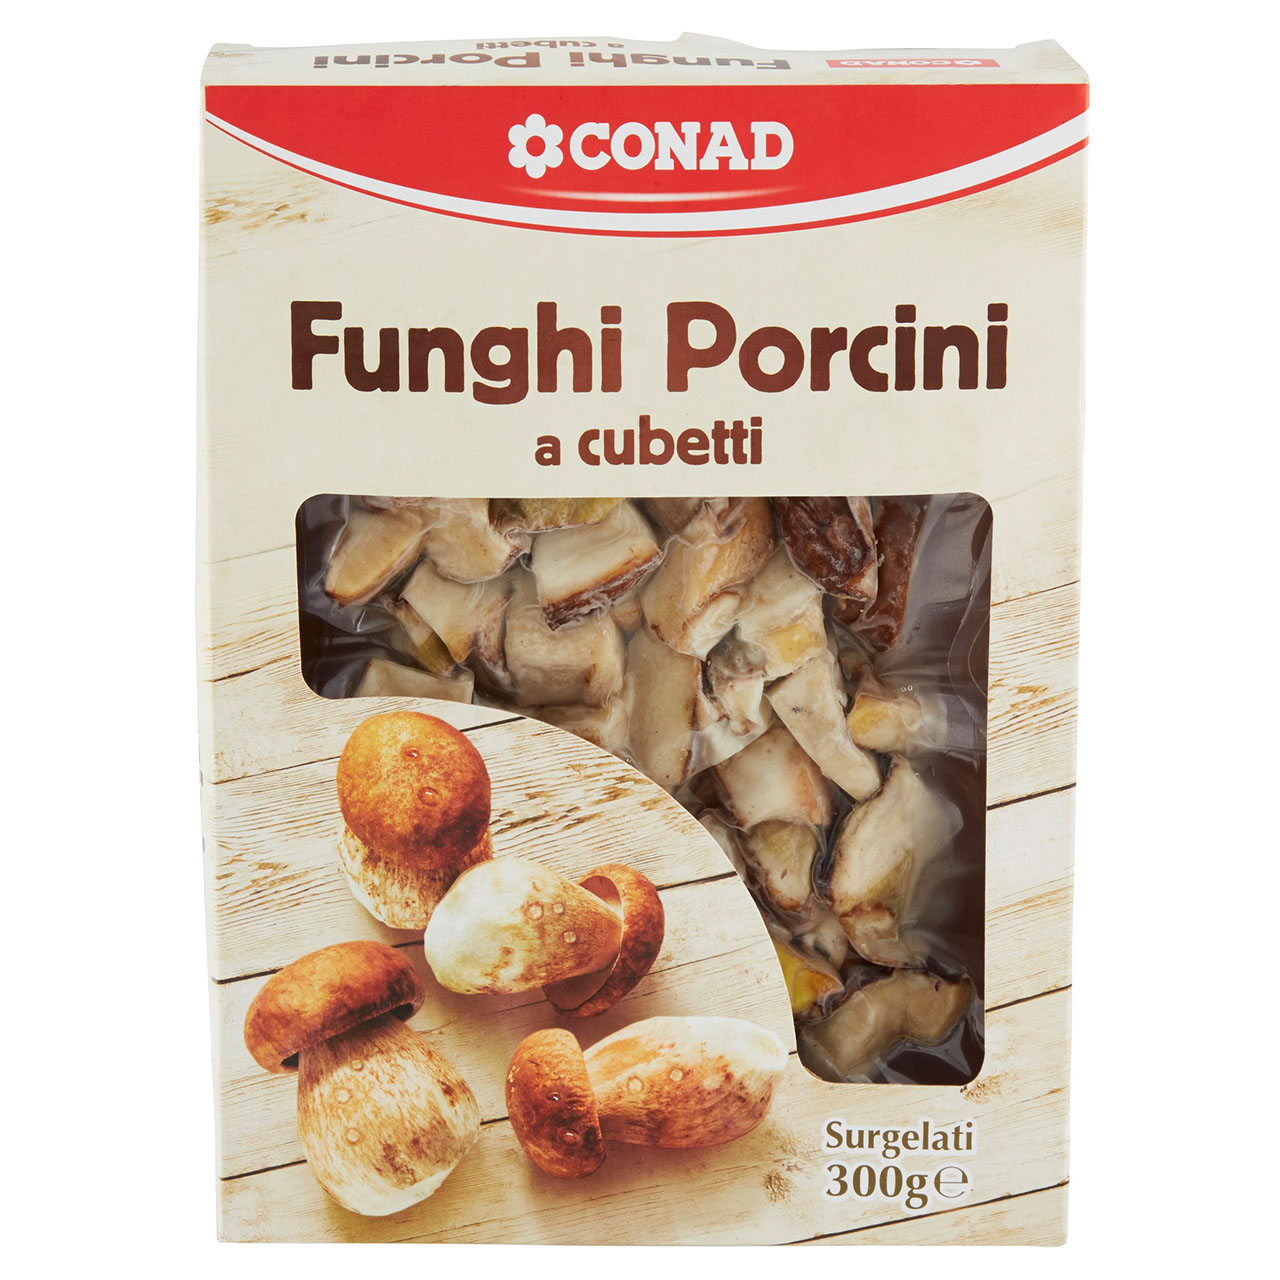 Funghi Porcini Surgelati a Cubetti Conad online